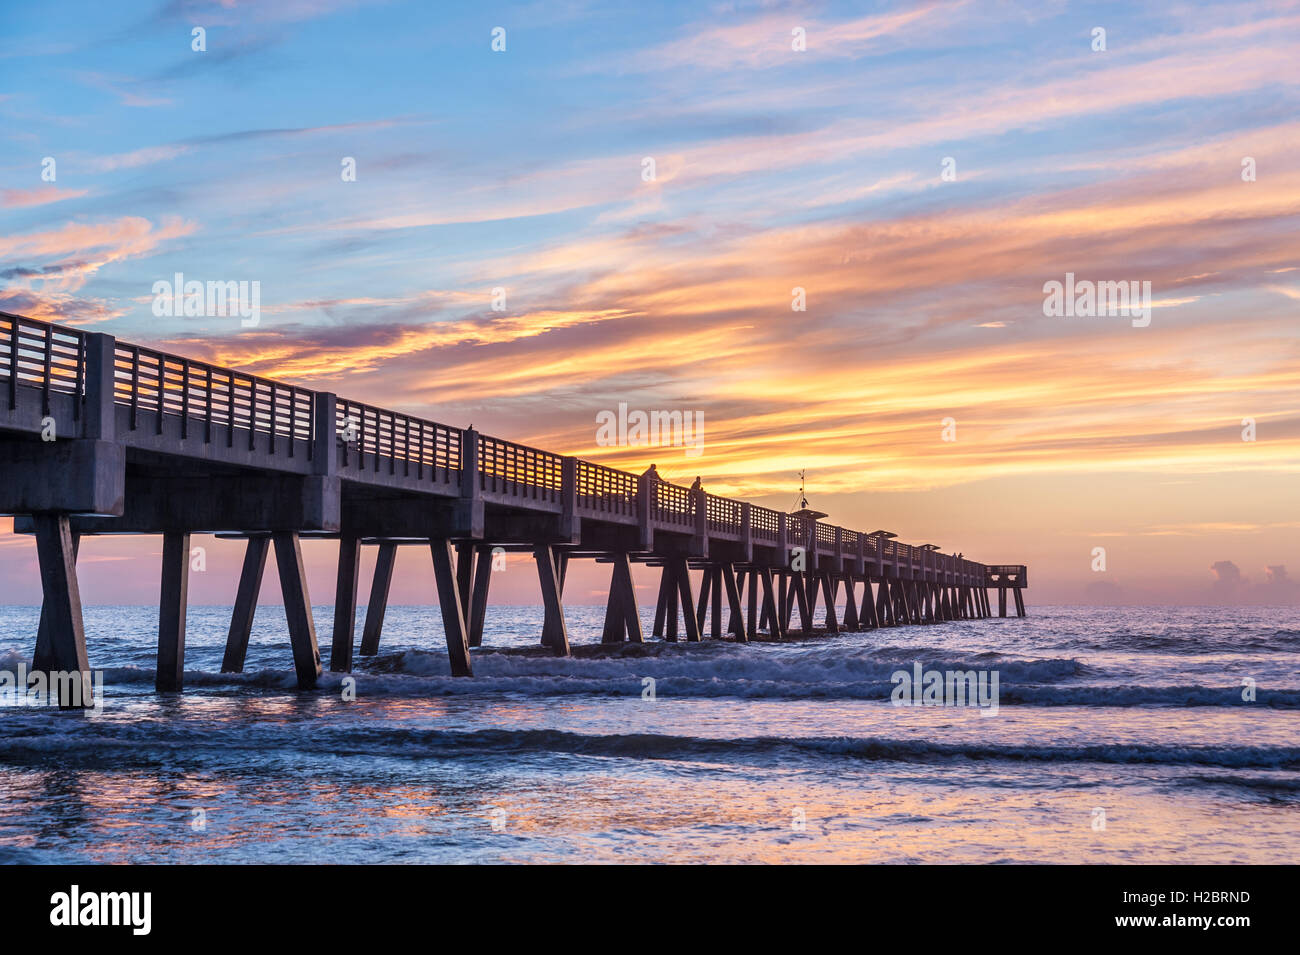 Un beau lever de soleil peint le ciel et l'océan avec ses couleurs vives au Jacksonville Beach Pier dans le nord-est de la Floride. (USA) Banque D'Images